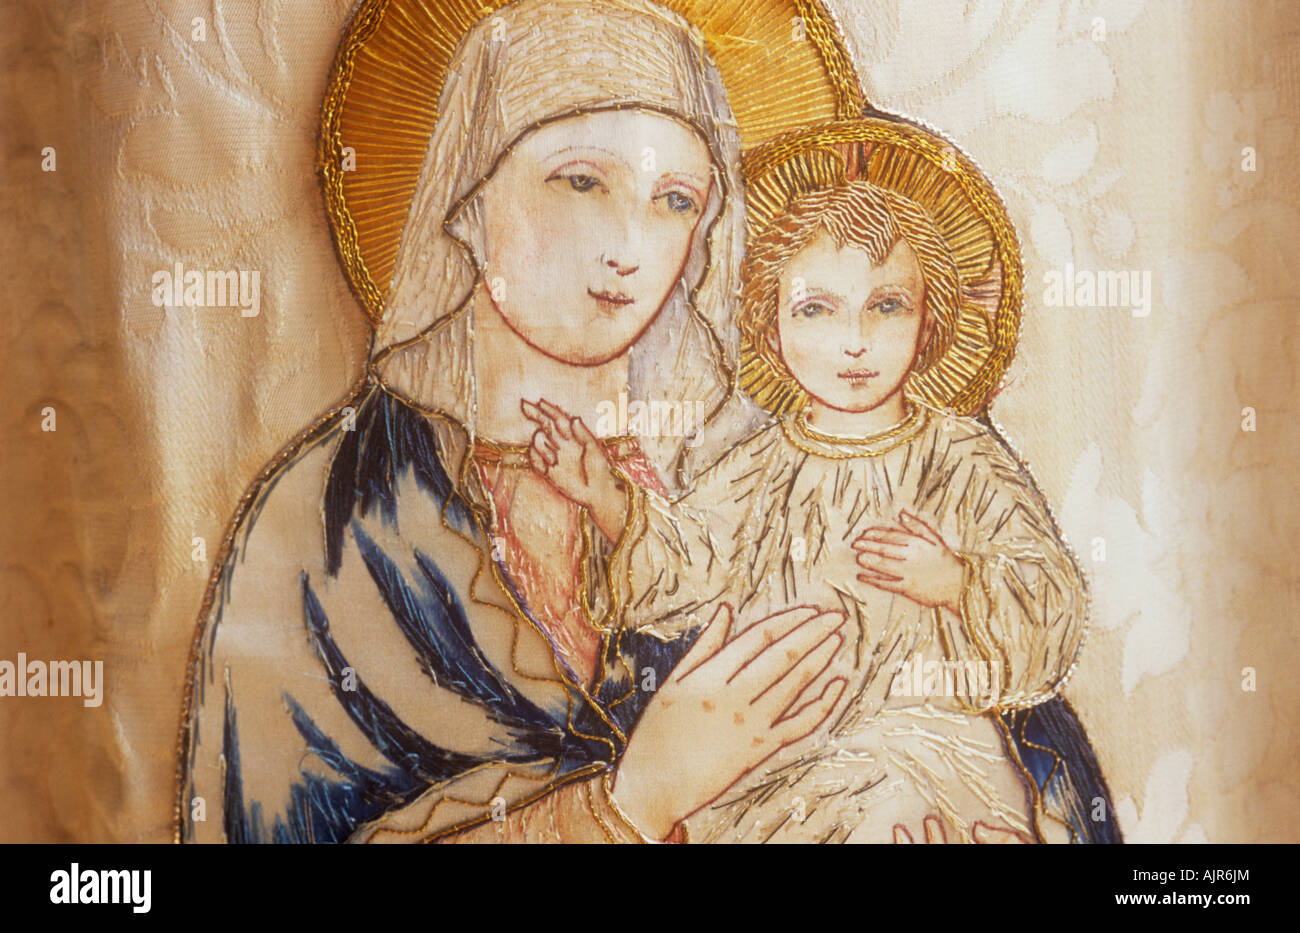 Détail de l'image de brodé Vierge Marie portant l'enfant Jésus le Christ dans des tons de couleurs sur tissu beige Banque D'Images